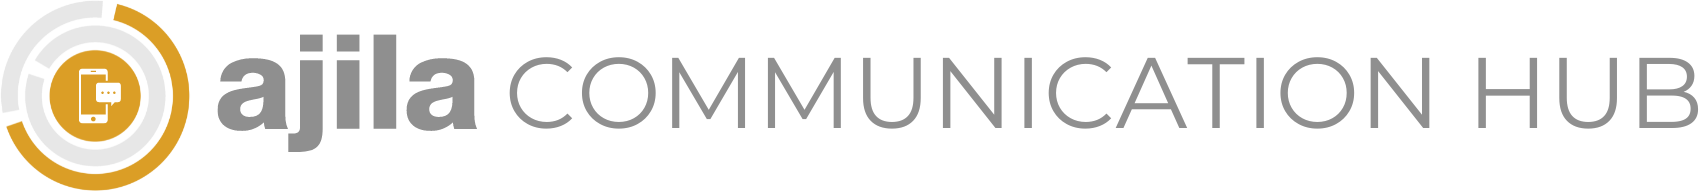 logo-ajila-communication-hub-v3